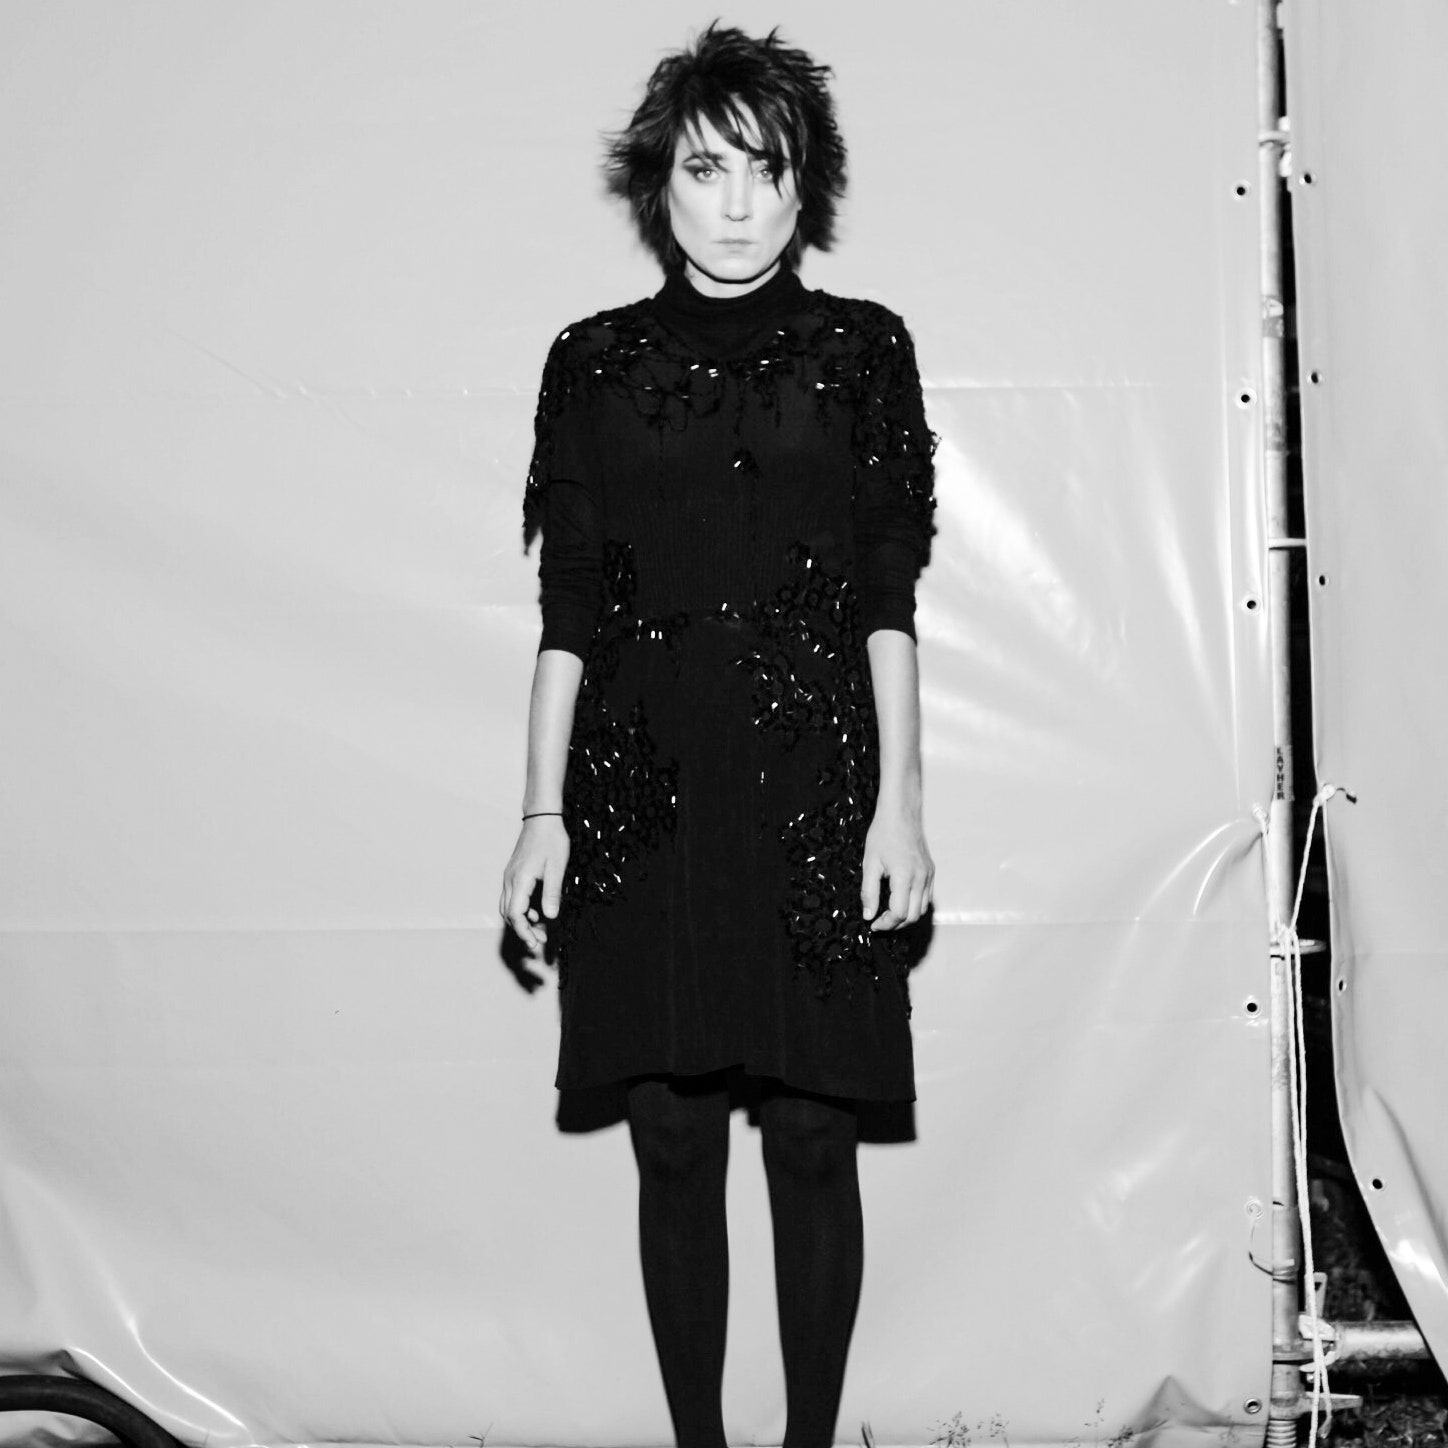 Земфира выпустила новый альбом «Бордерлайн». Vogue рассказывает об  отношениях рок-звезды и одежды | Vogue Russia